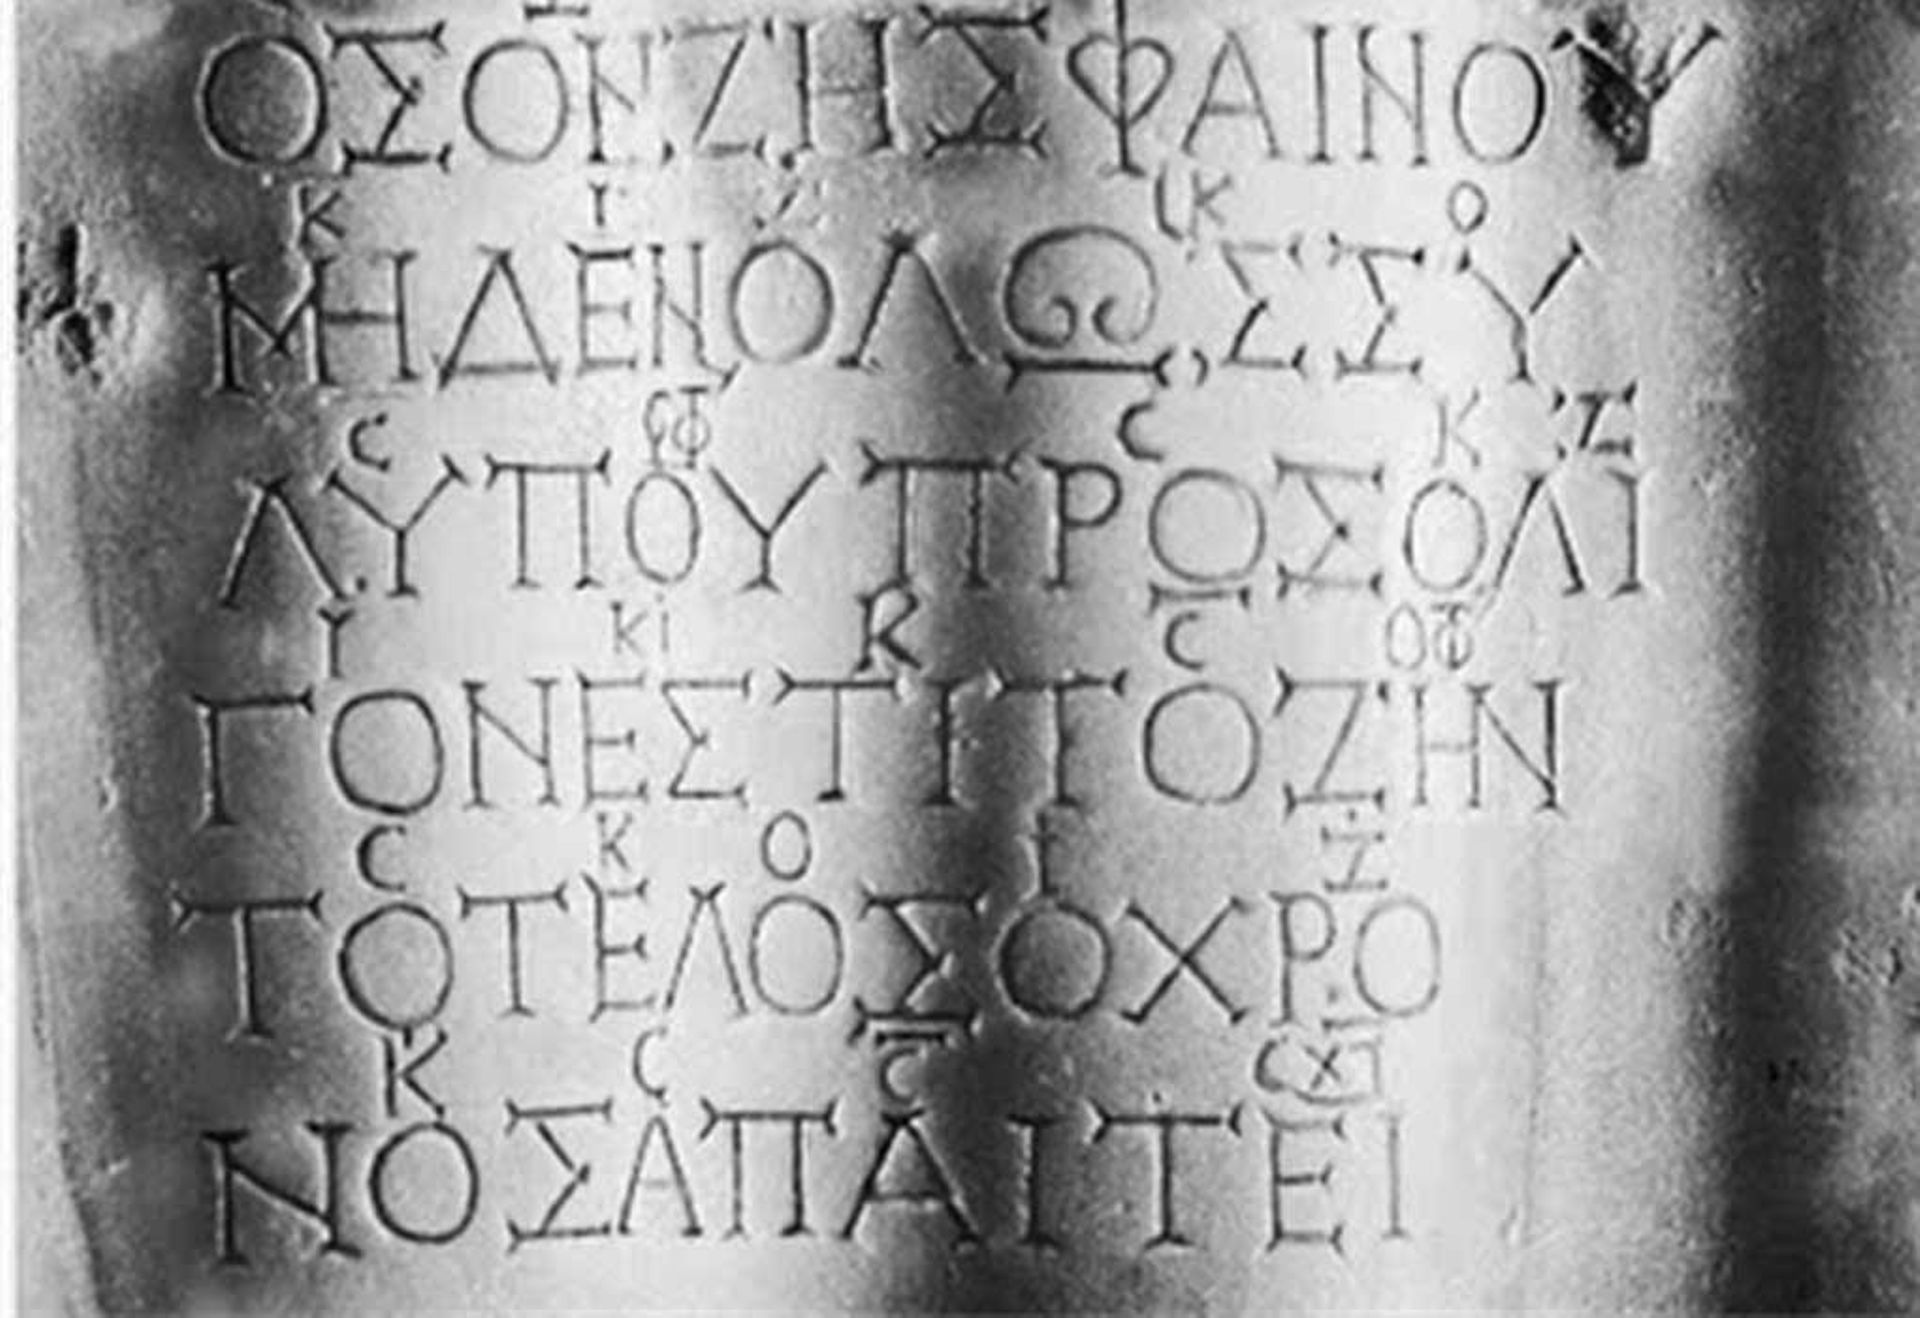 Texte présent sur la stèle dite "de Seikilos"